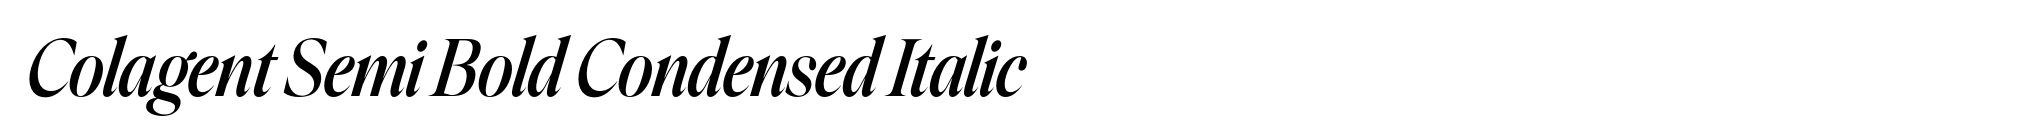 Colagent Semi Bold Condensed Italic image